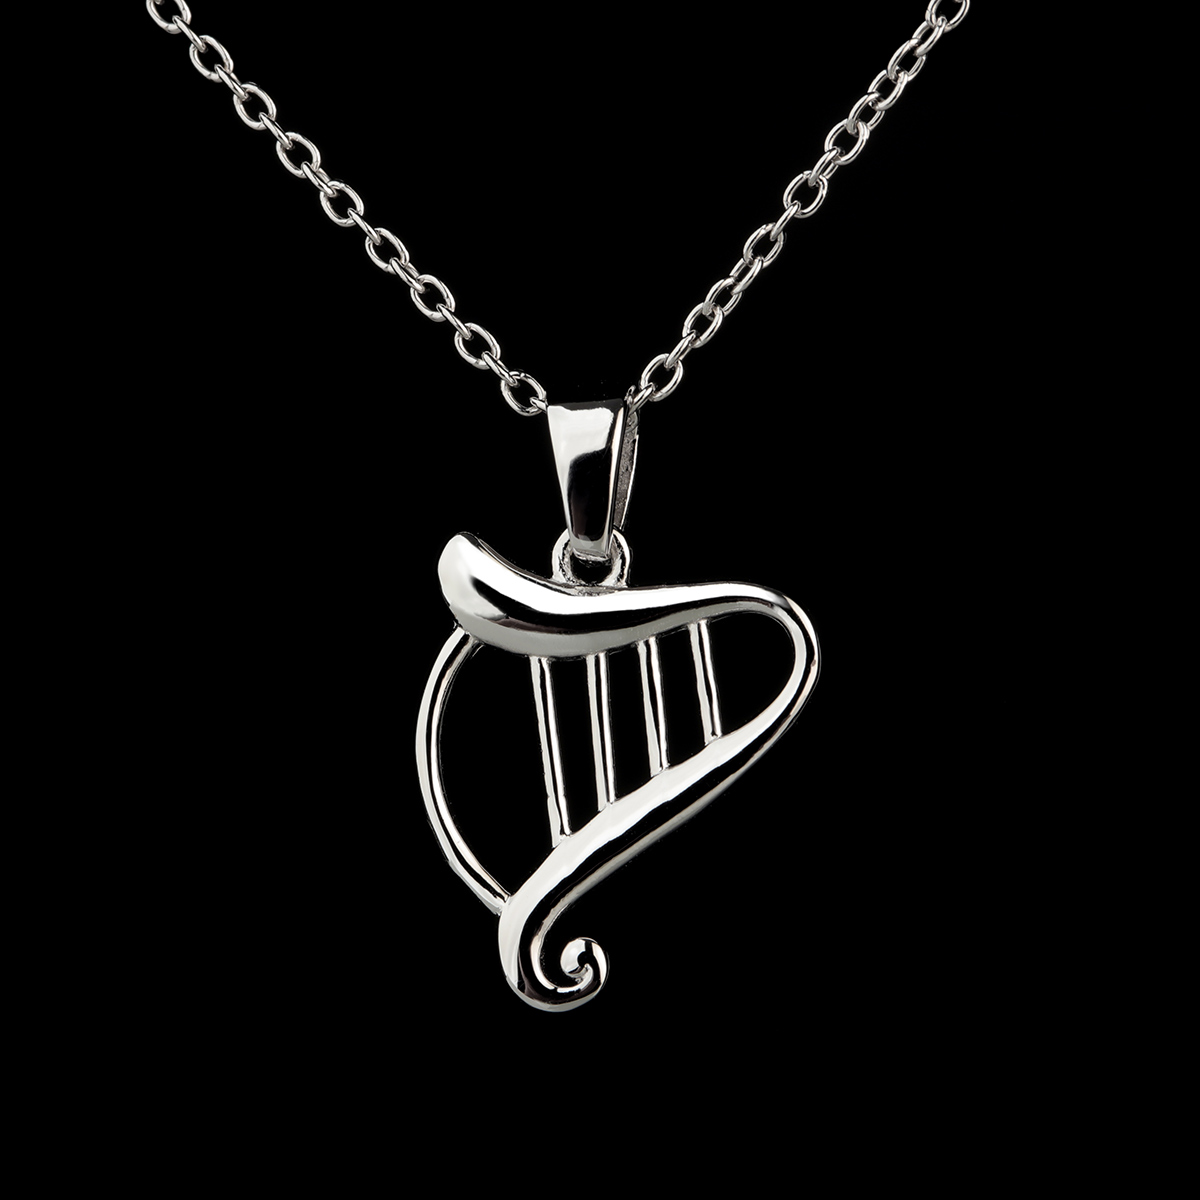 Nouveau Irish Harp Kette - Irische Harfe aus Sterling Silber